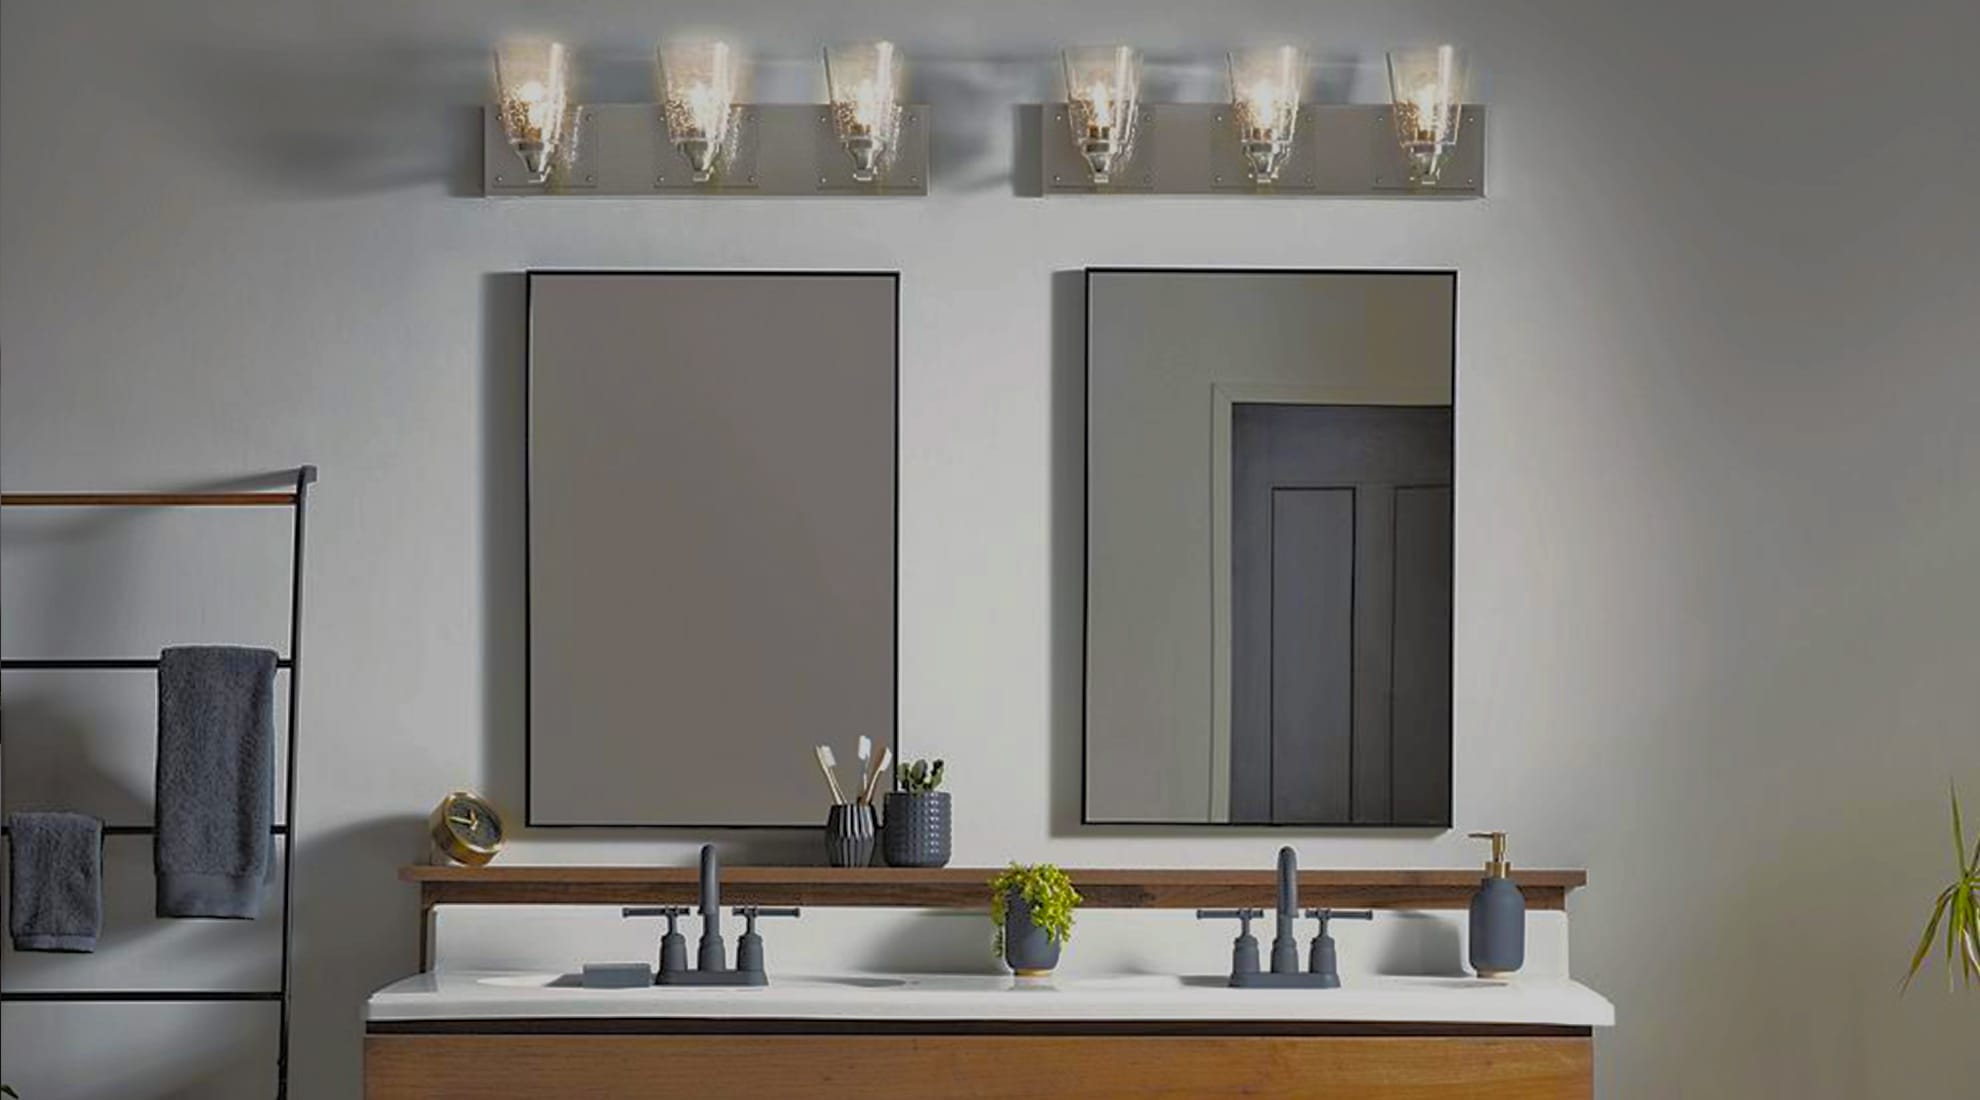 Bathroom Vanity Lighting Er S Guide, What Are The Best Light Bulbs For Bathroom Vanity